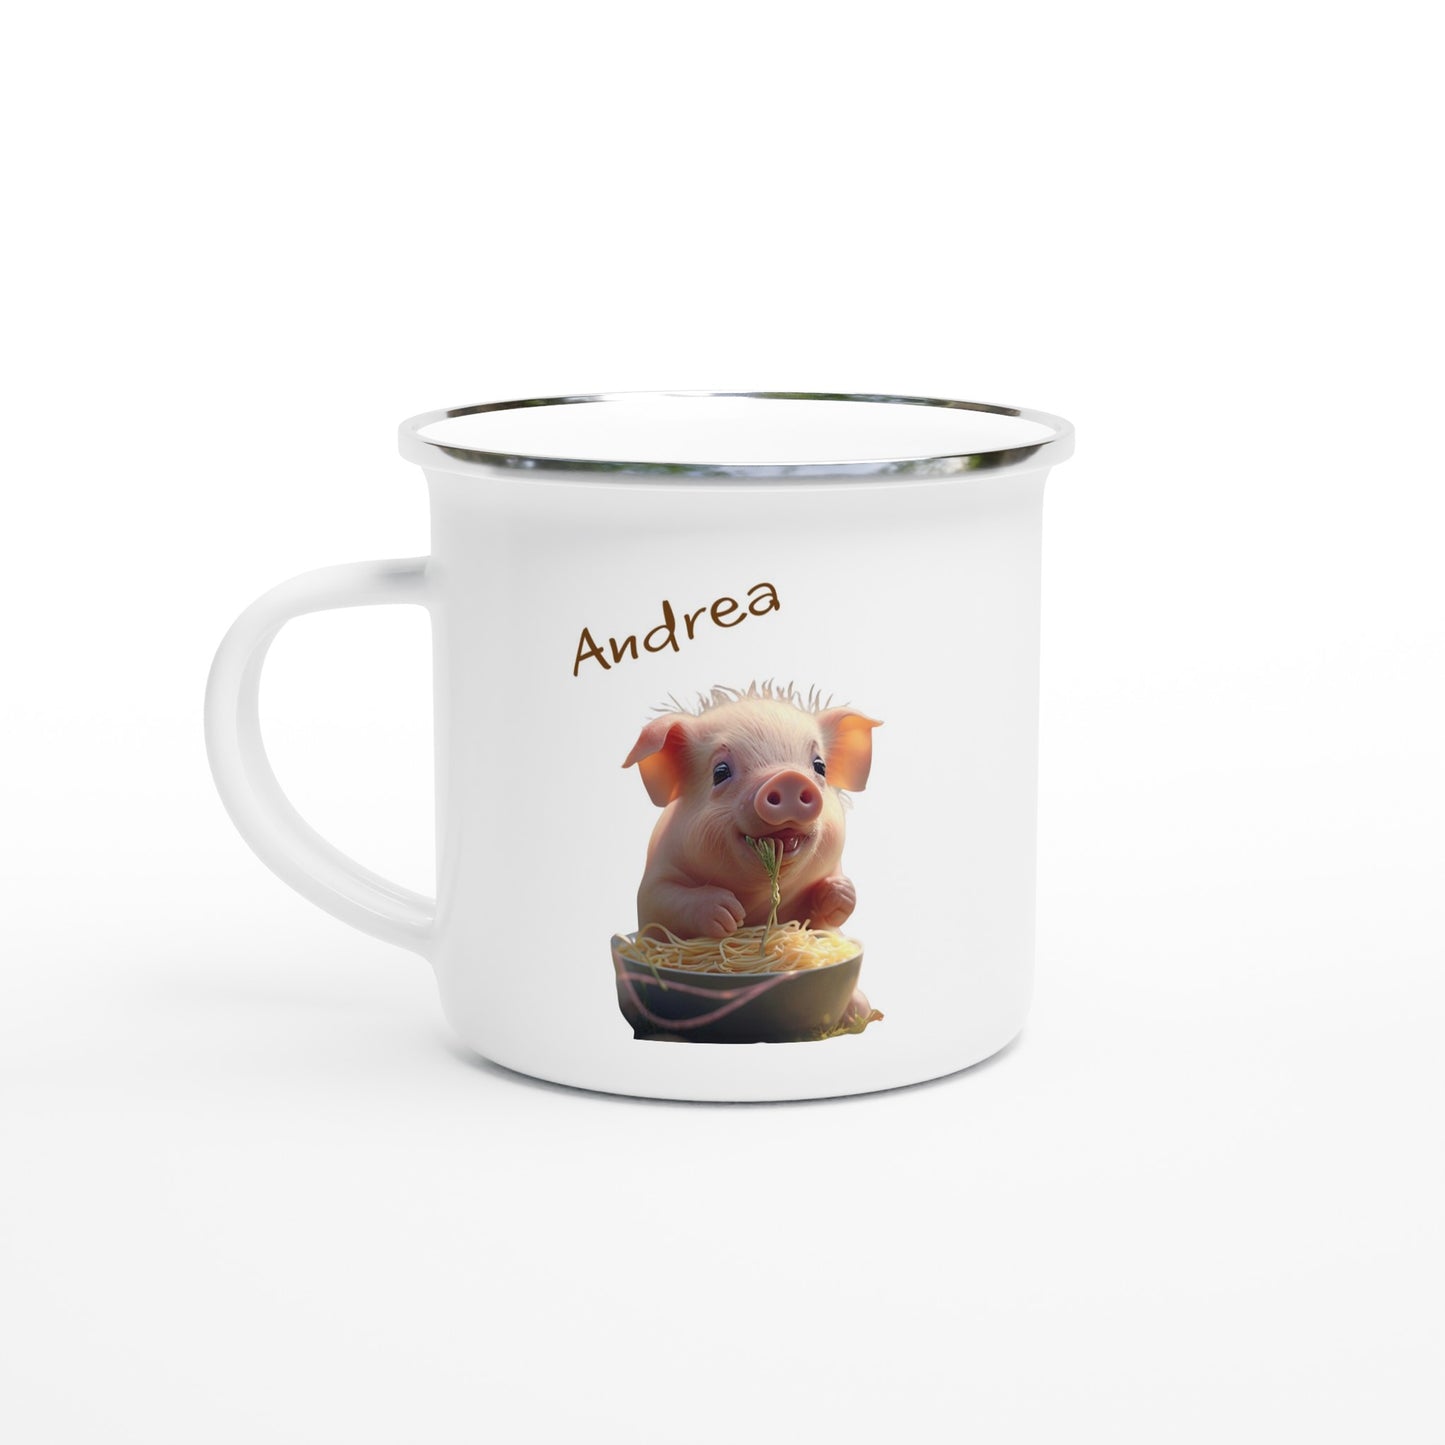 Pig enamel camping mug with name